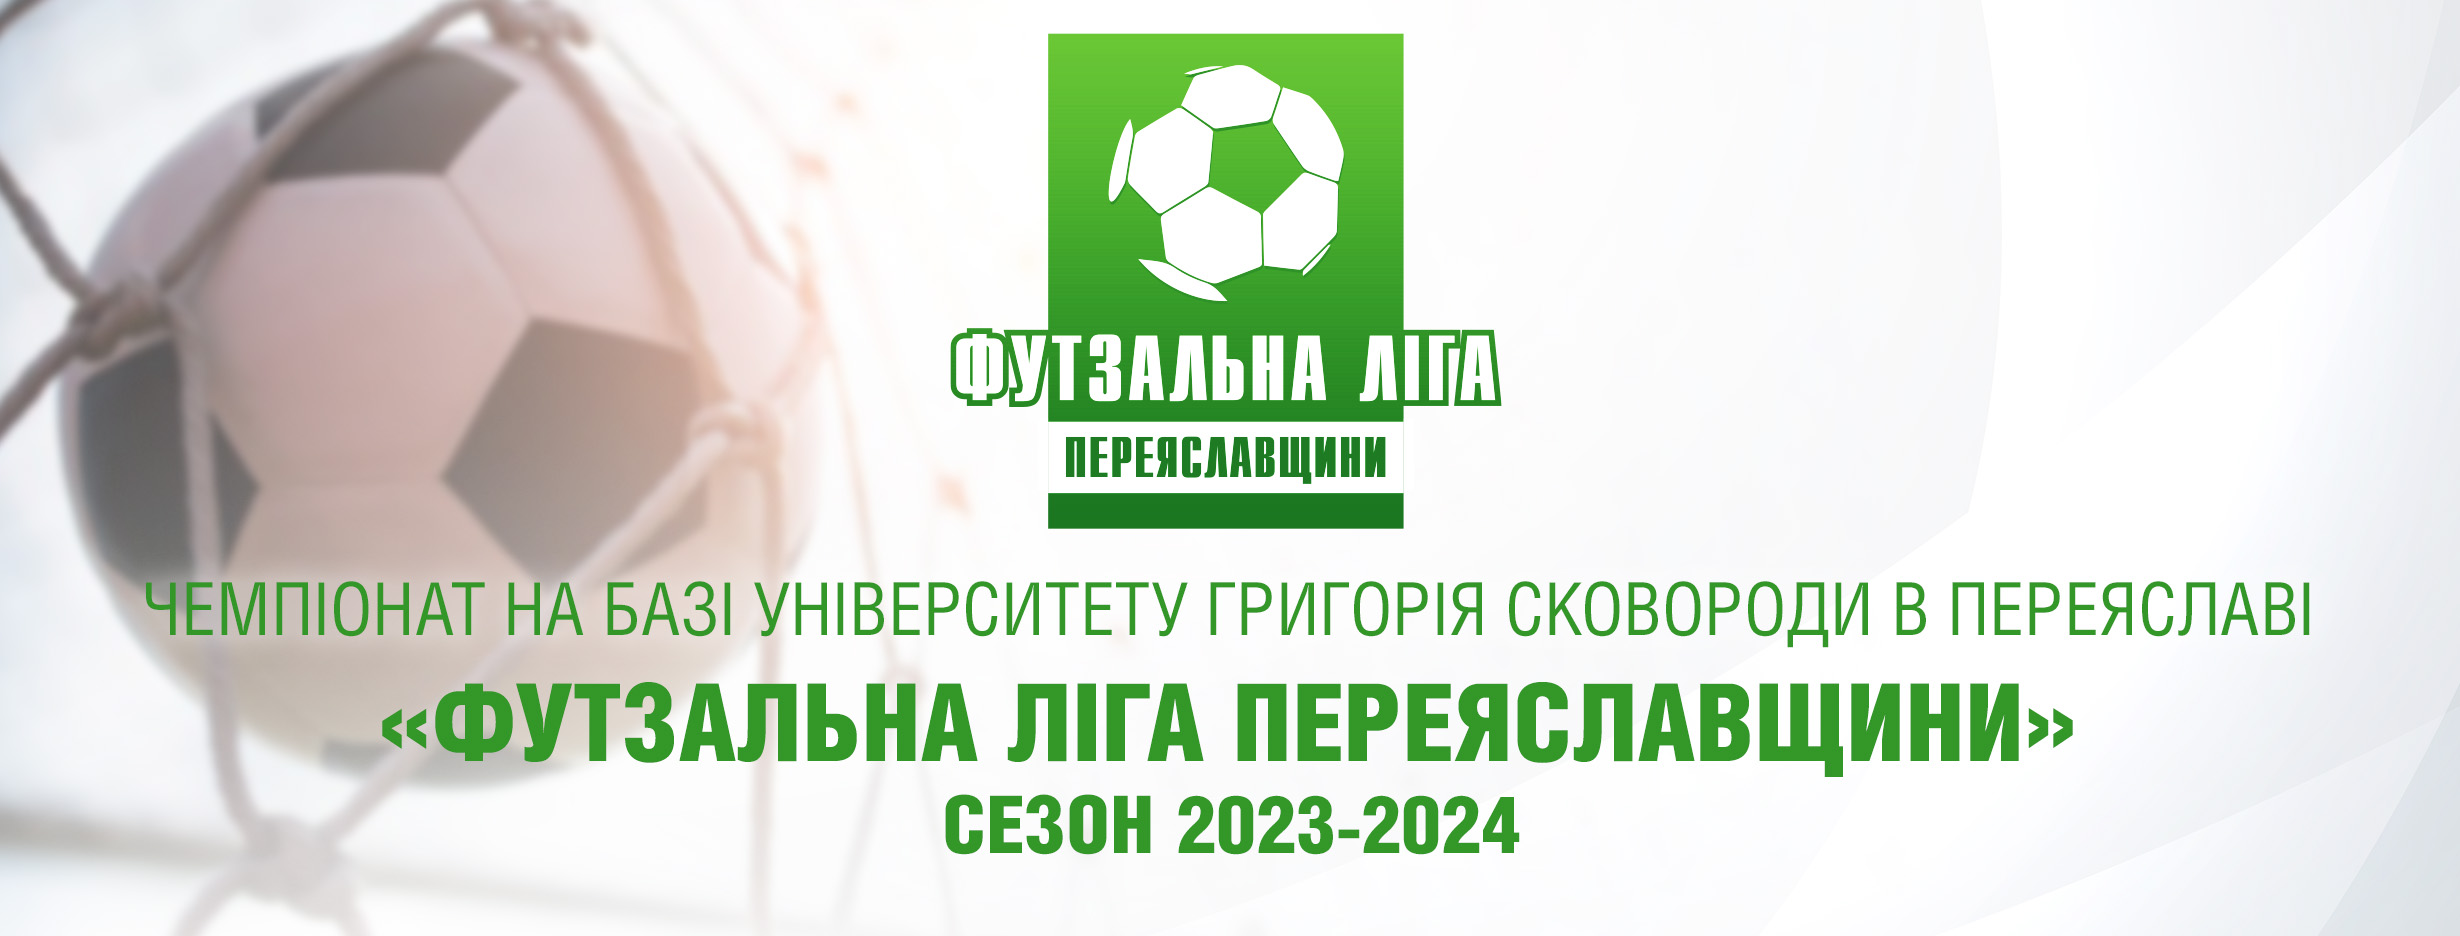 Стартувала «Футзальна ліга Переяславщини» сезону 2023-2024: як зіграли перше коло ігор та що буде далі